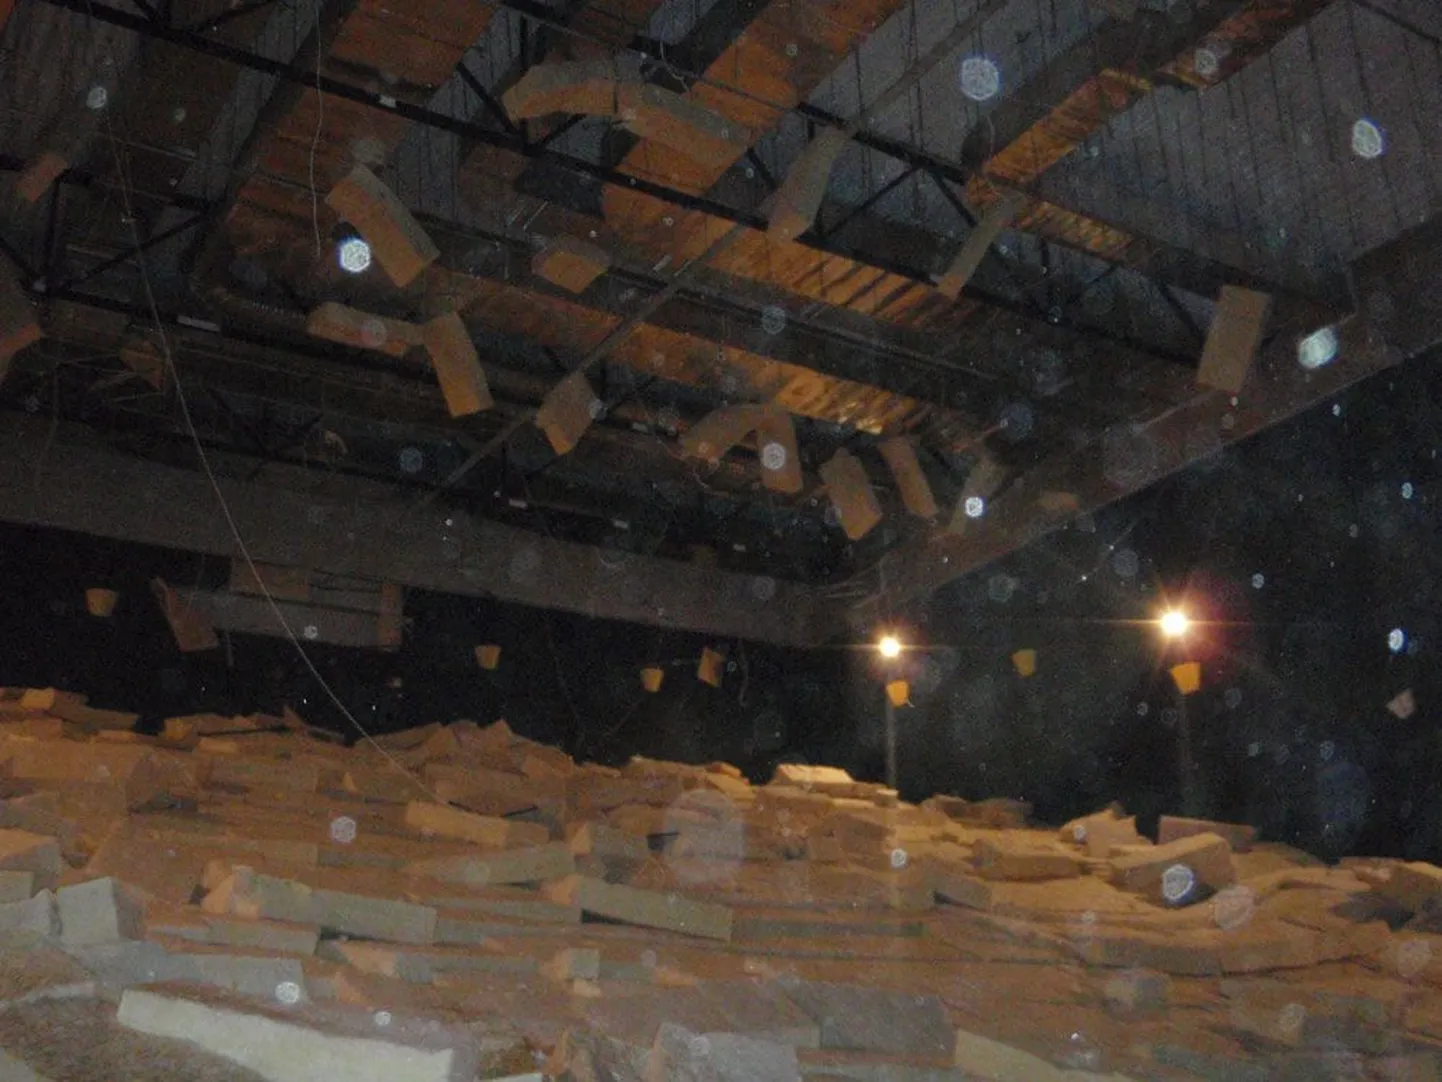 Tänaseks on Cinamoni kinosaalis alla kukkunud lae jäänused ära koristatud ning tehakse ettevalmistusi uue paigaldamiseks.